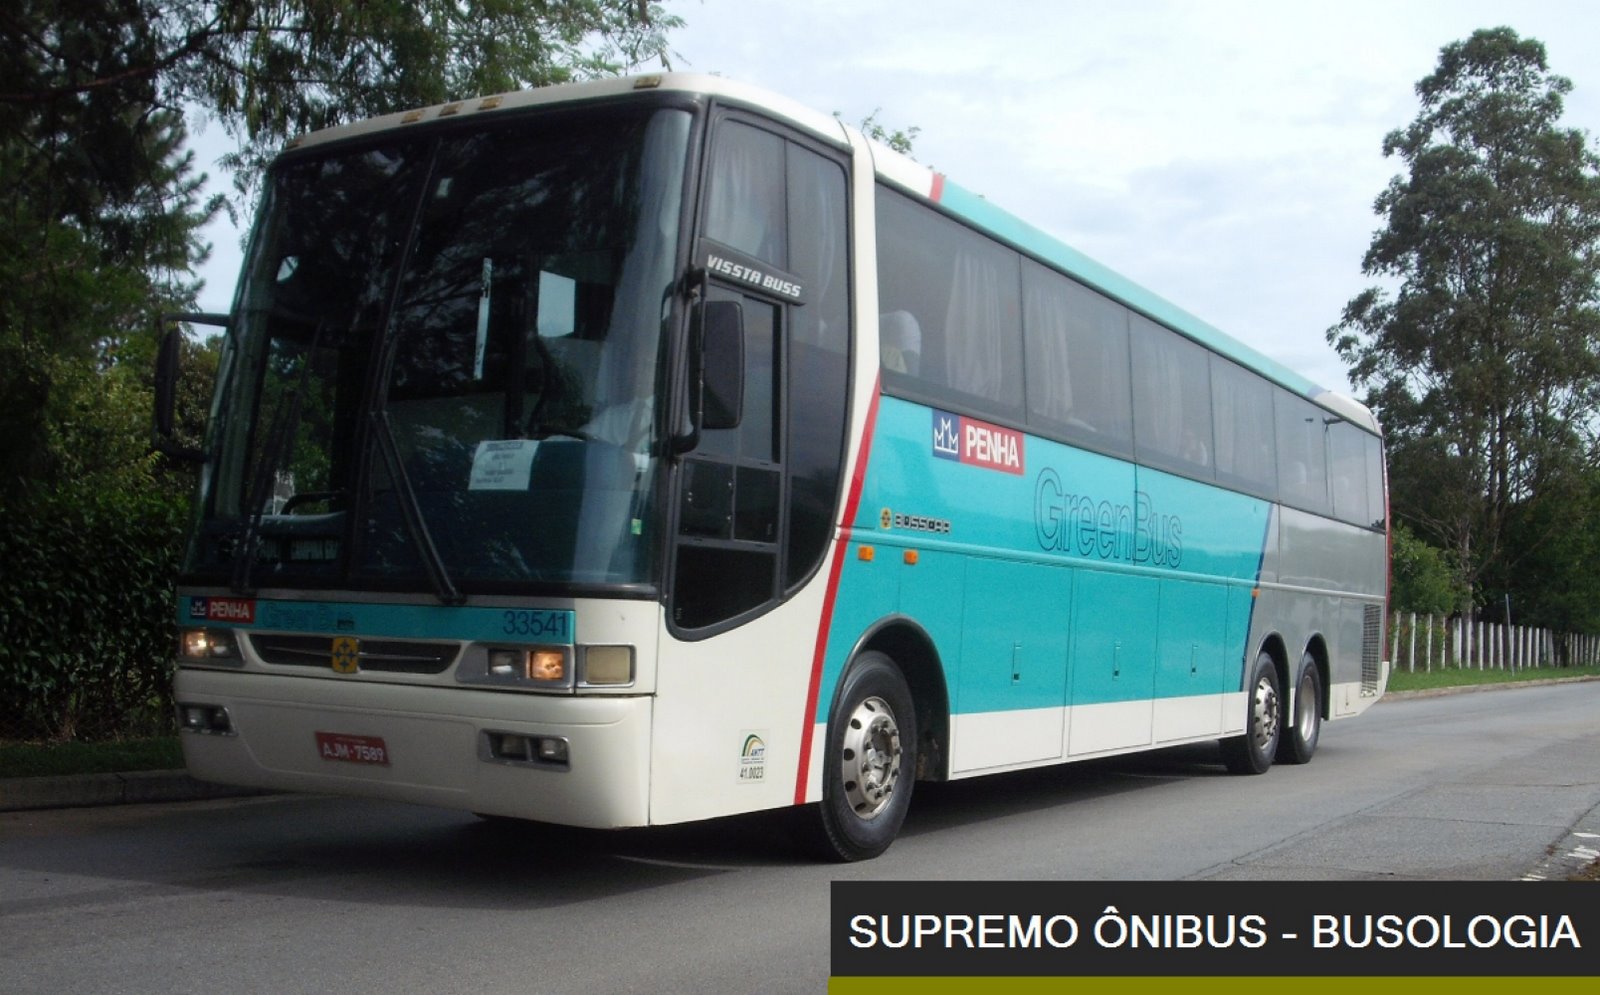 www.supremoonibus.com - Supremo Ônibus